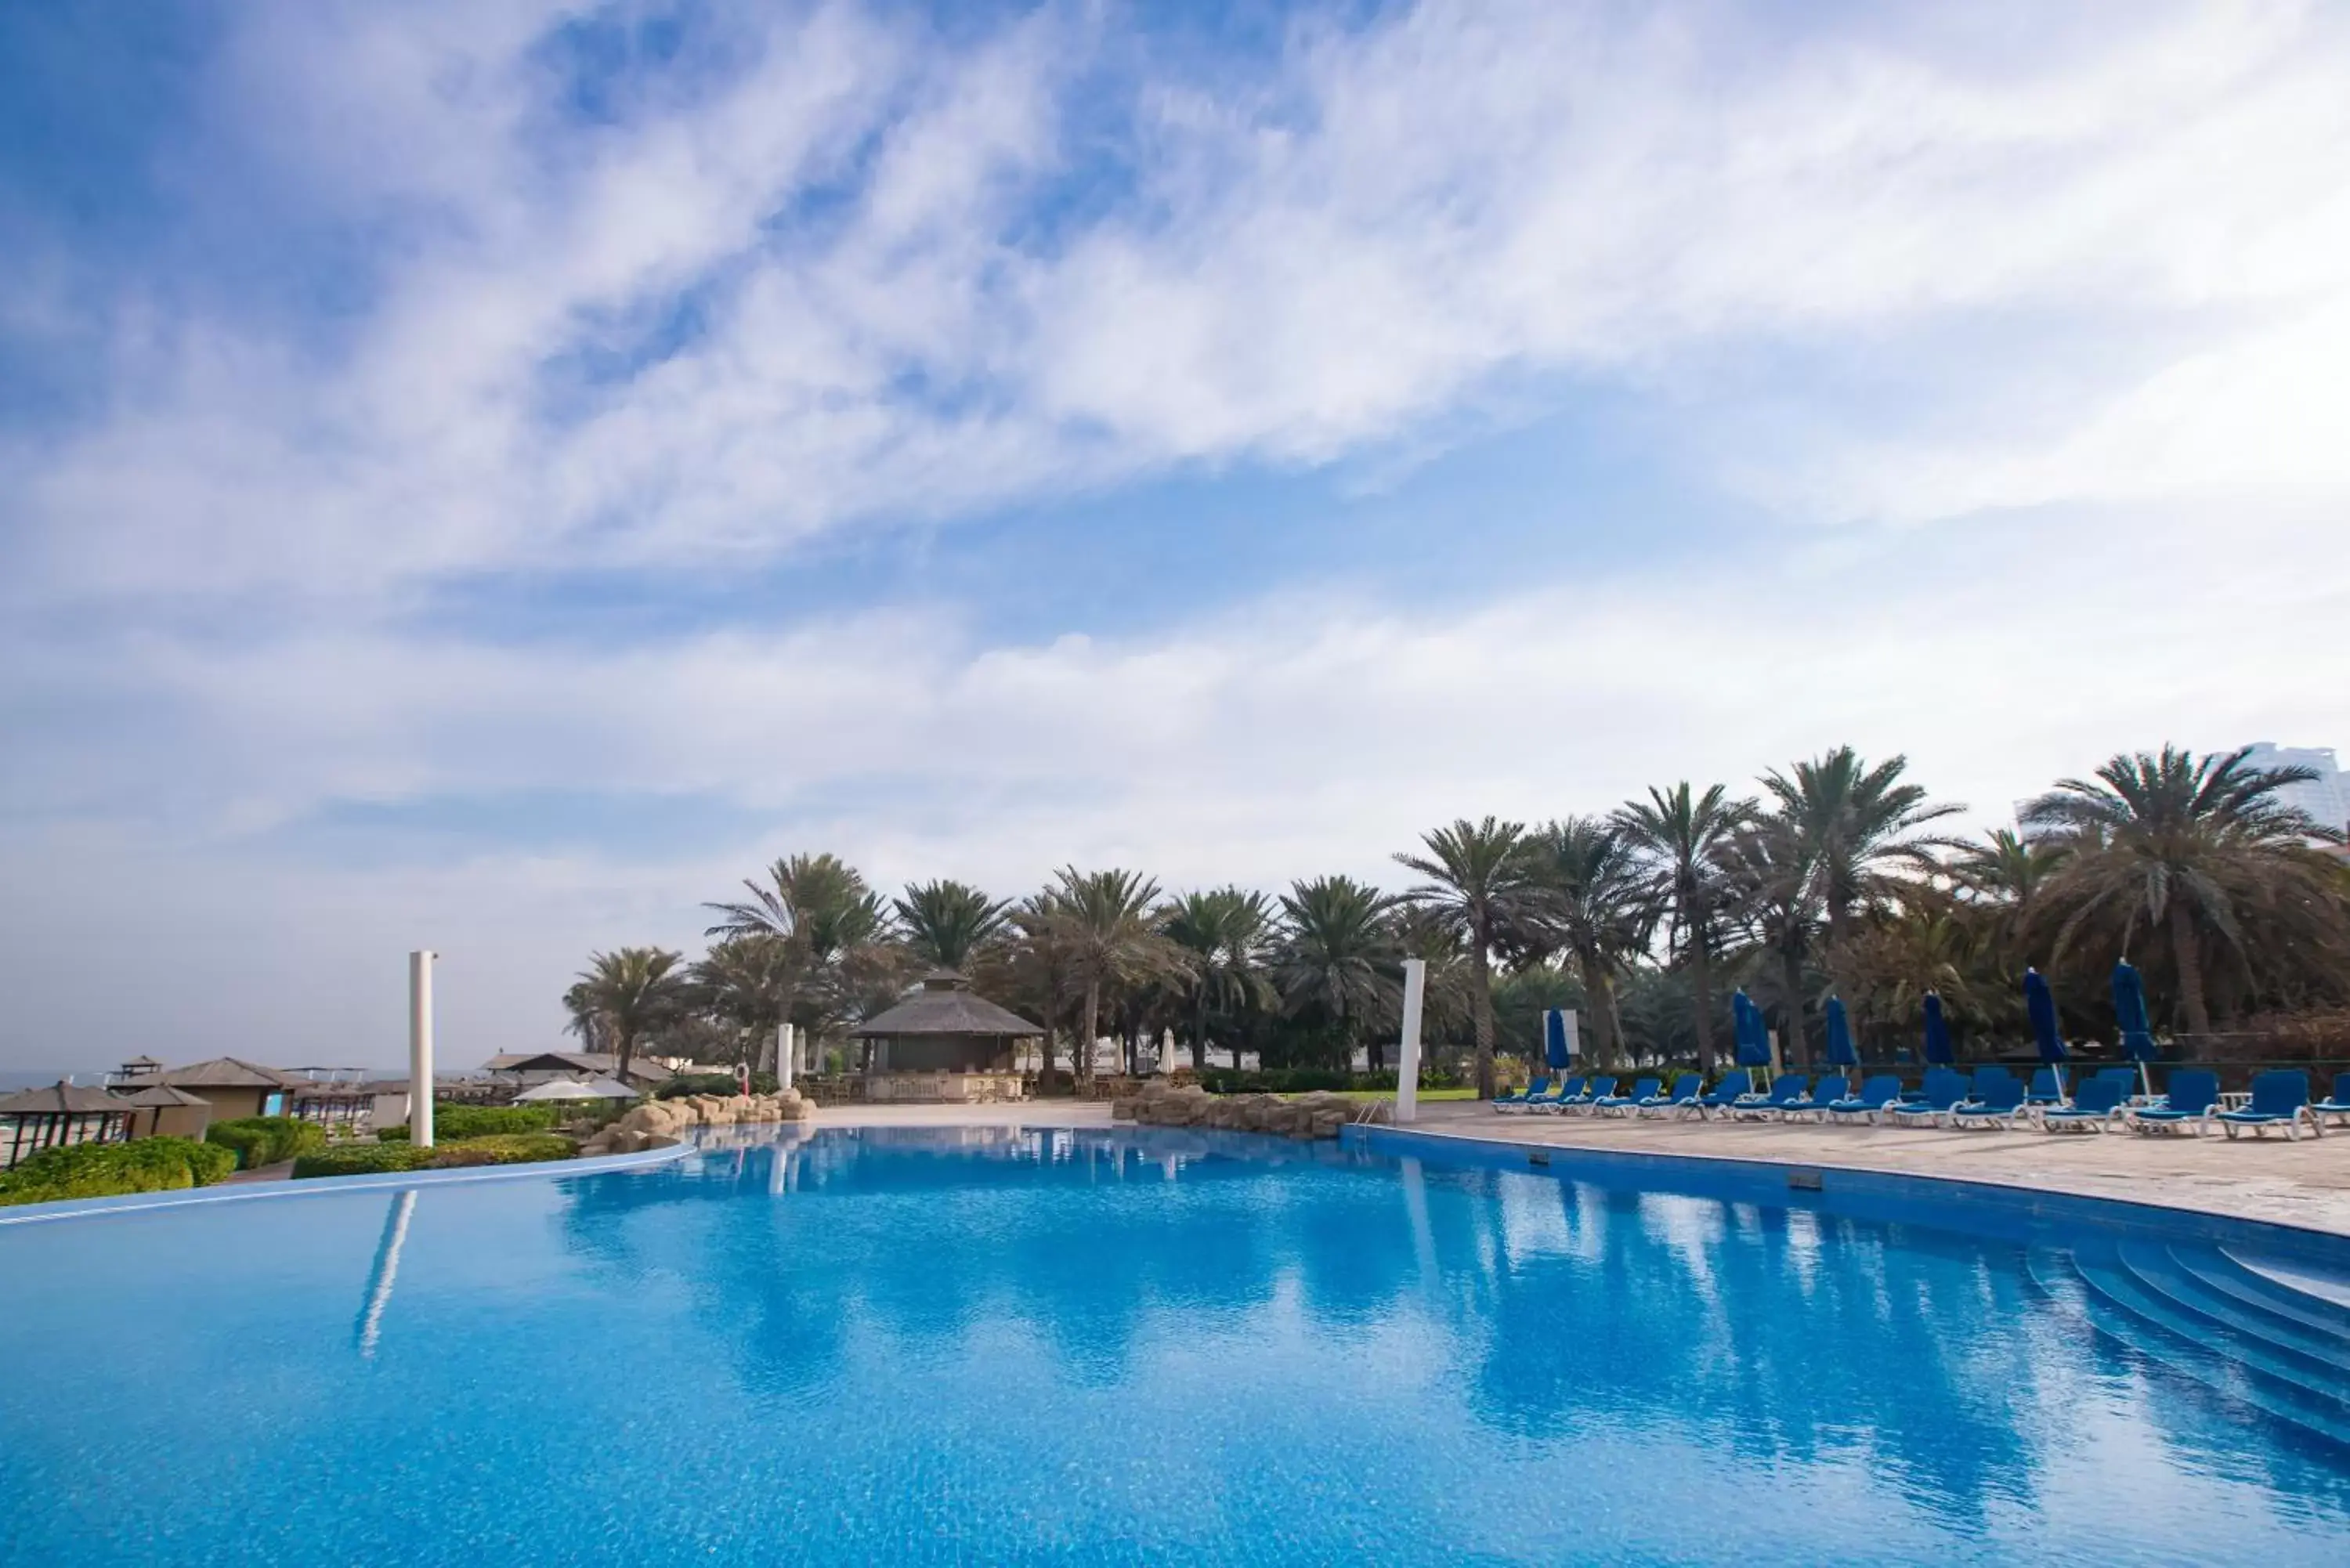 Swimming Pool in Coral Beach Resort Sharjah